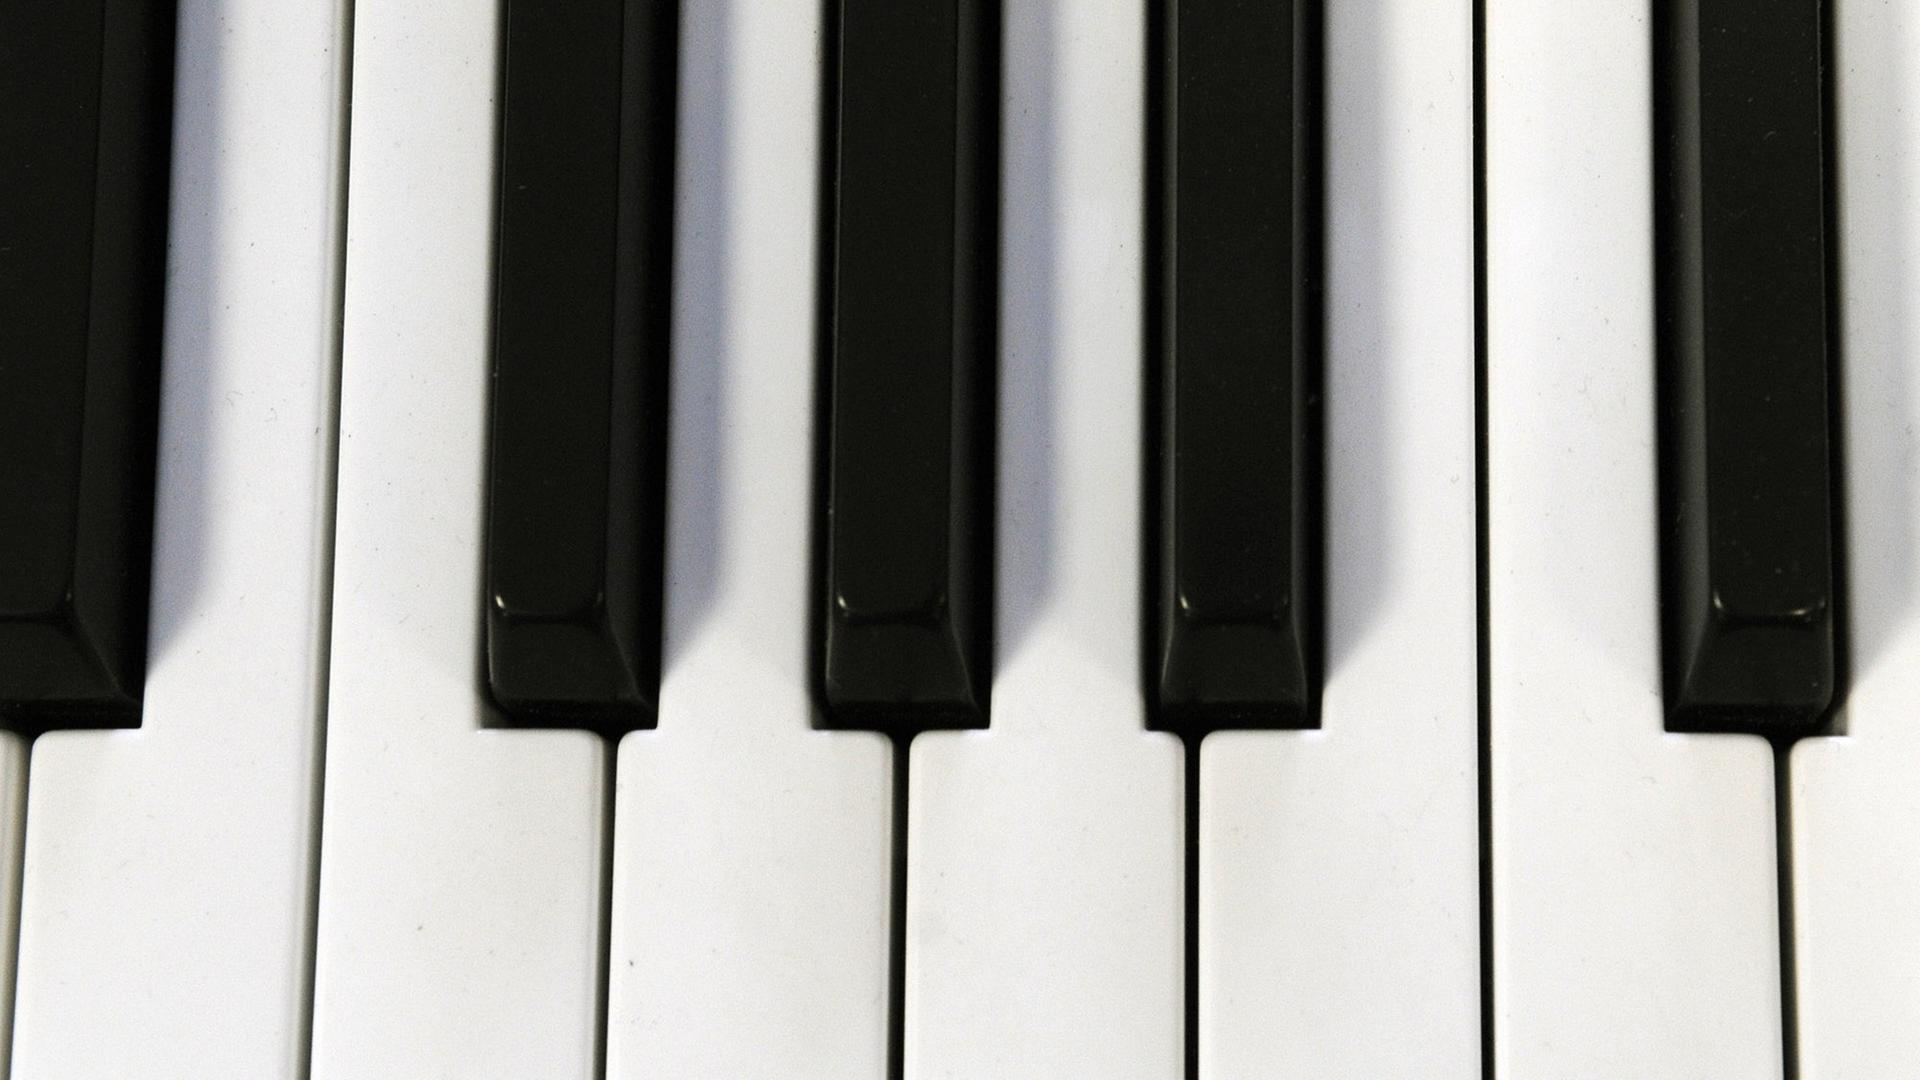 Schwarz-weiße Tasten eines E-Pianos